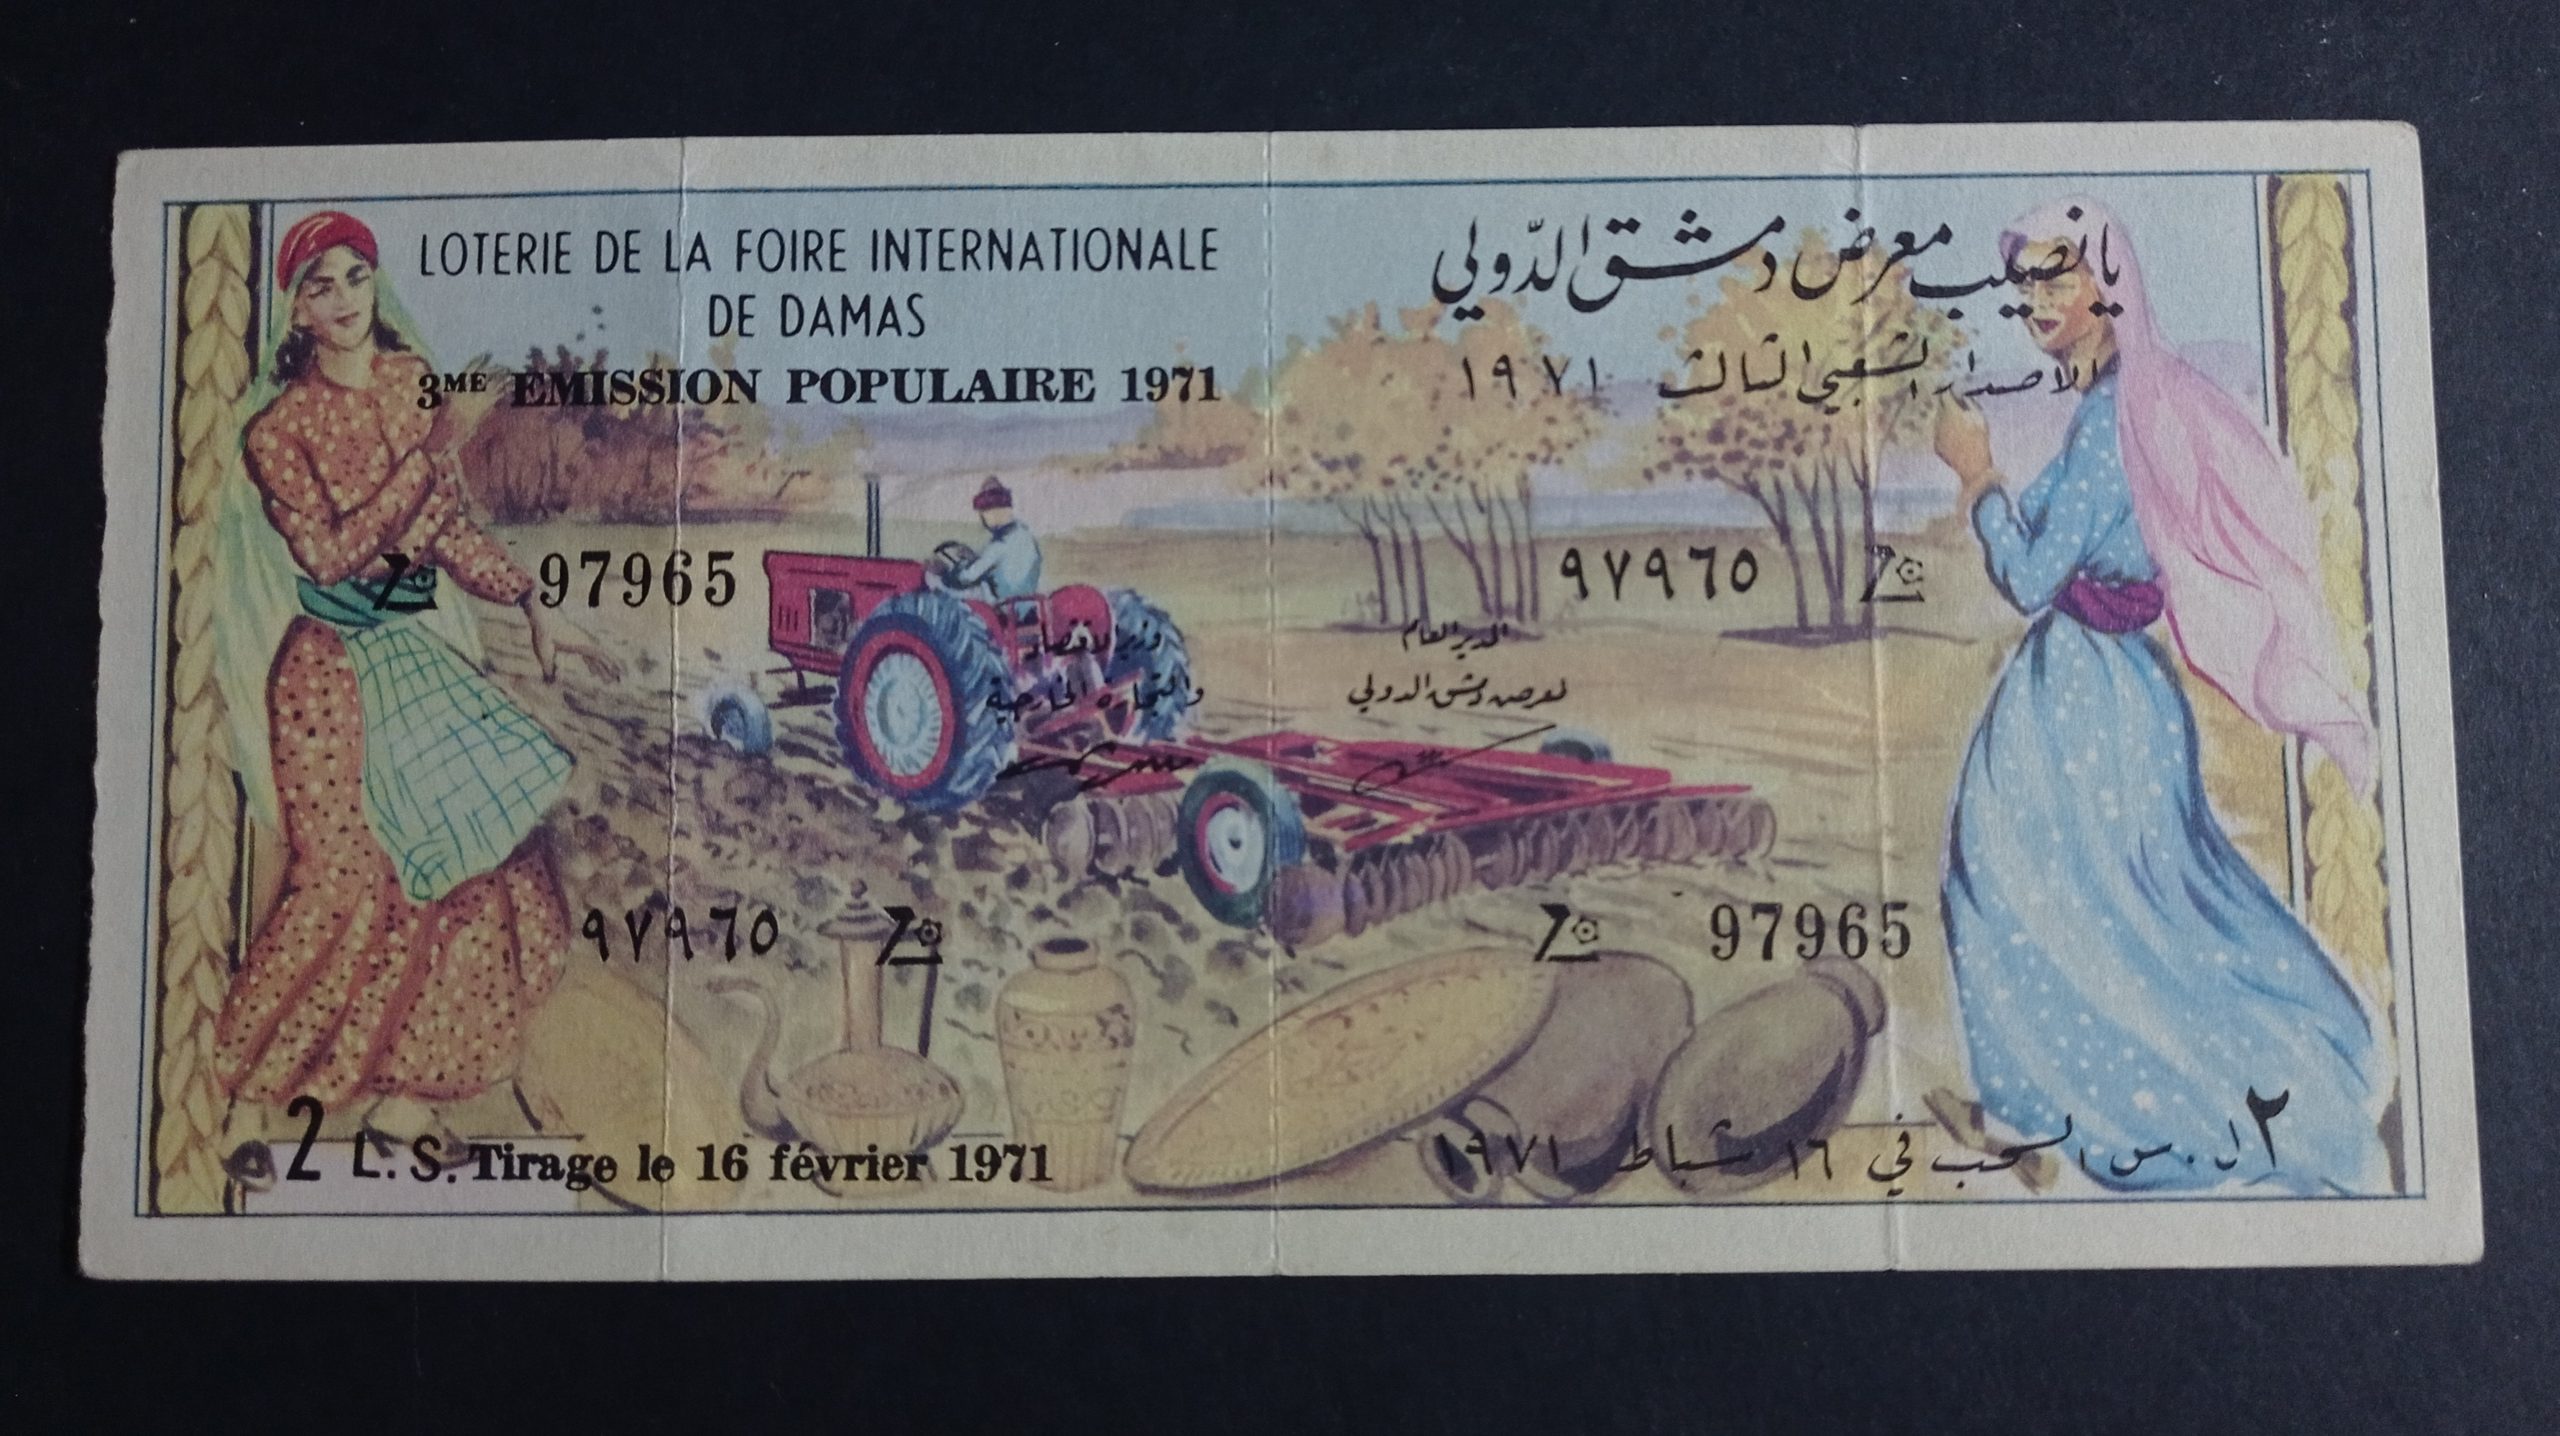 التاريخ السوري المعاصر - يانصيب معرض دمشق الدولي - الإصدار الشعبي الثالث عام 1971